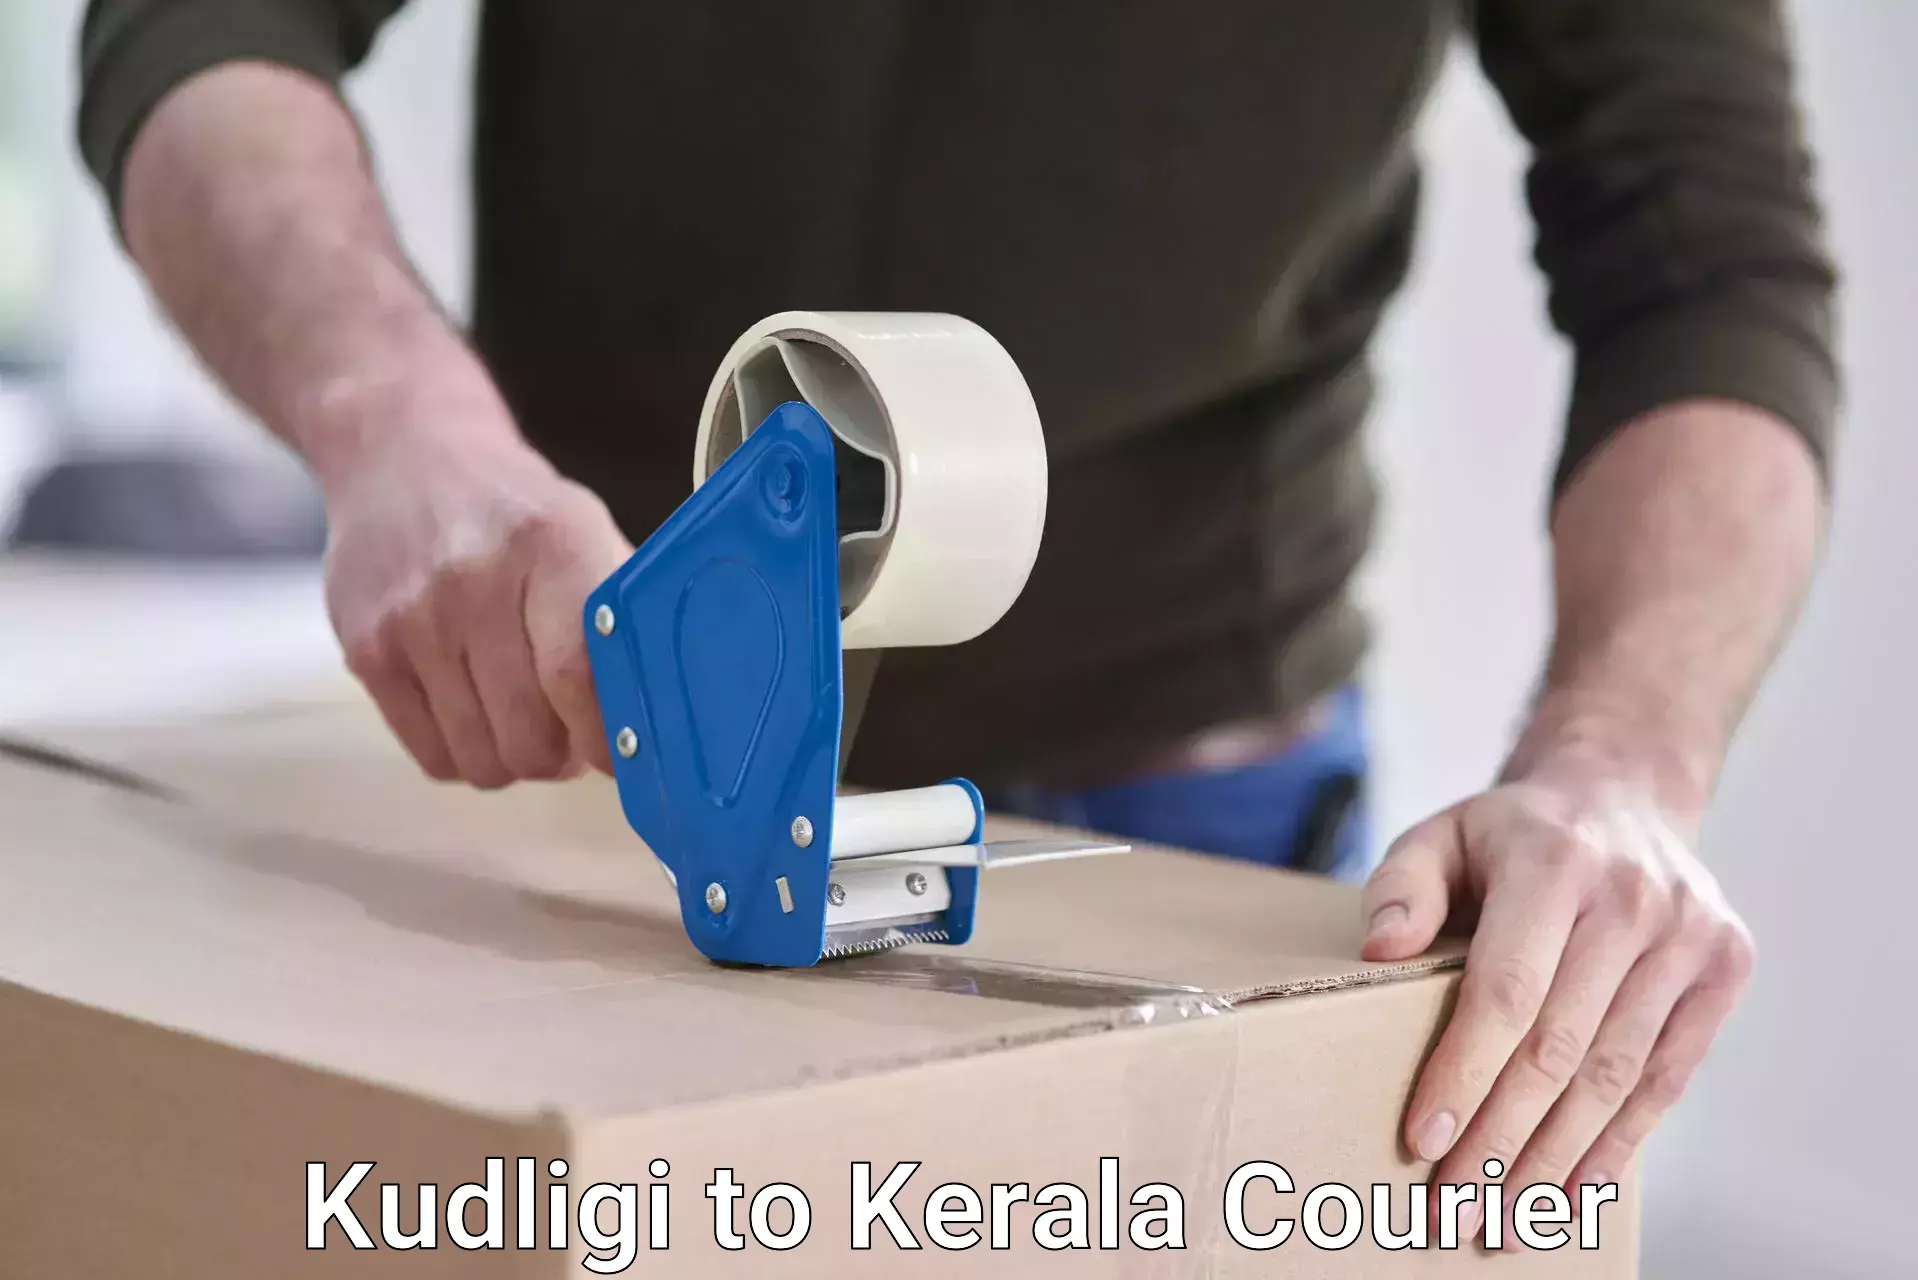 Tech-enabled shipping in Kudligi to Kerala